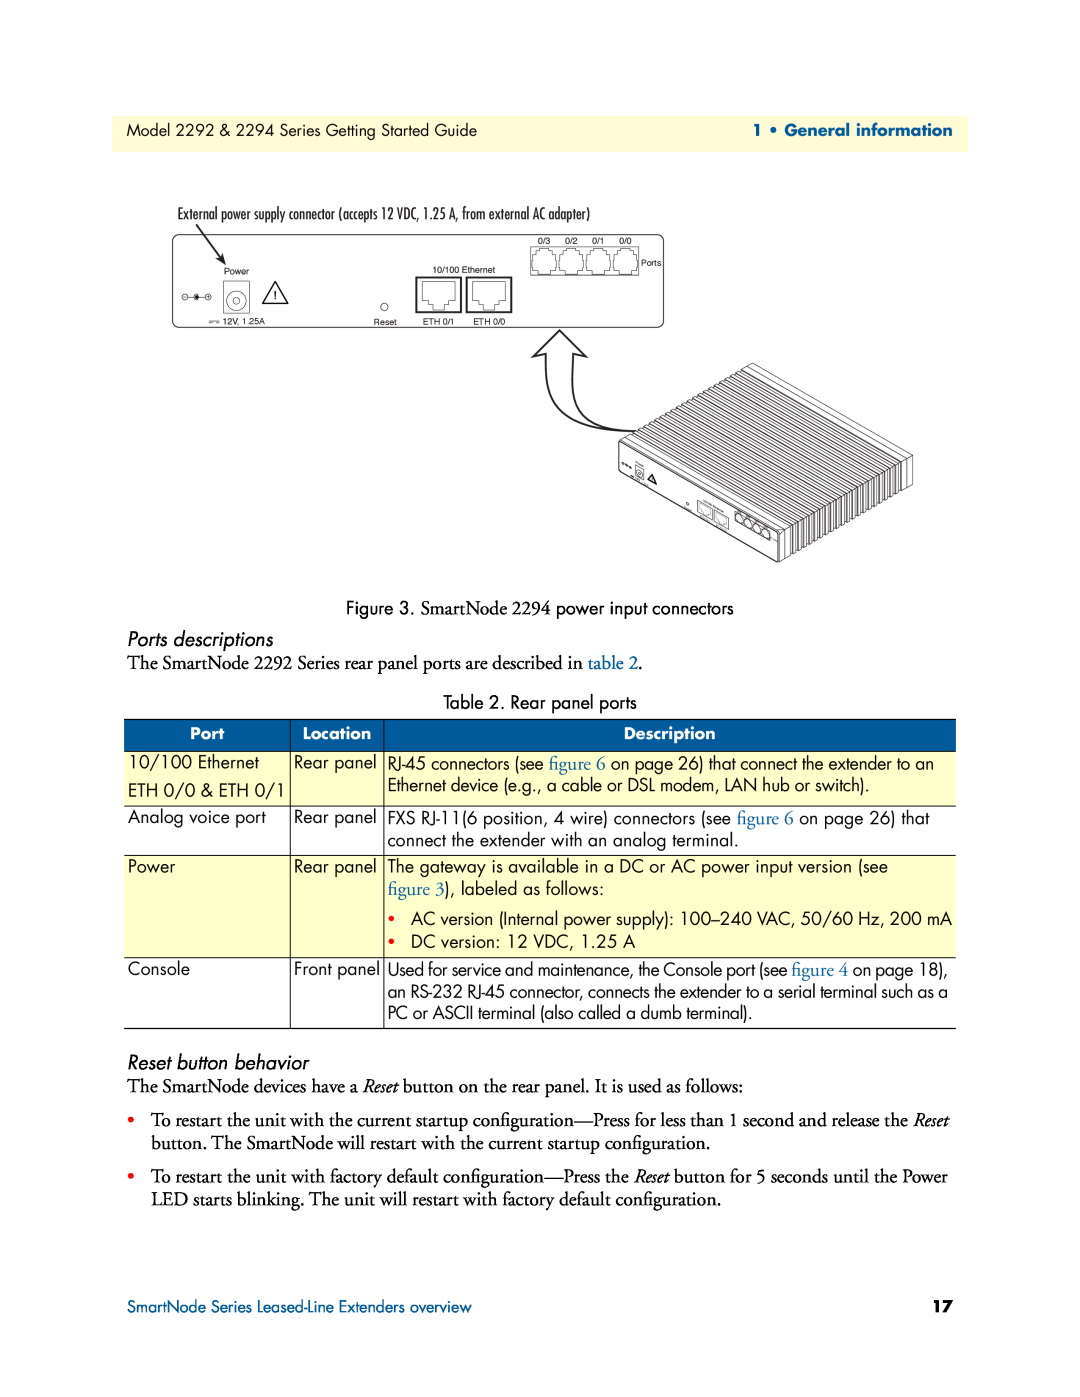 Patton electronic 2292, 2294 manual Ports descriptions, Reset button behavior 